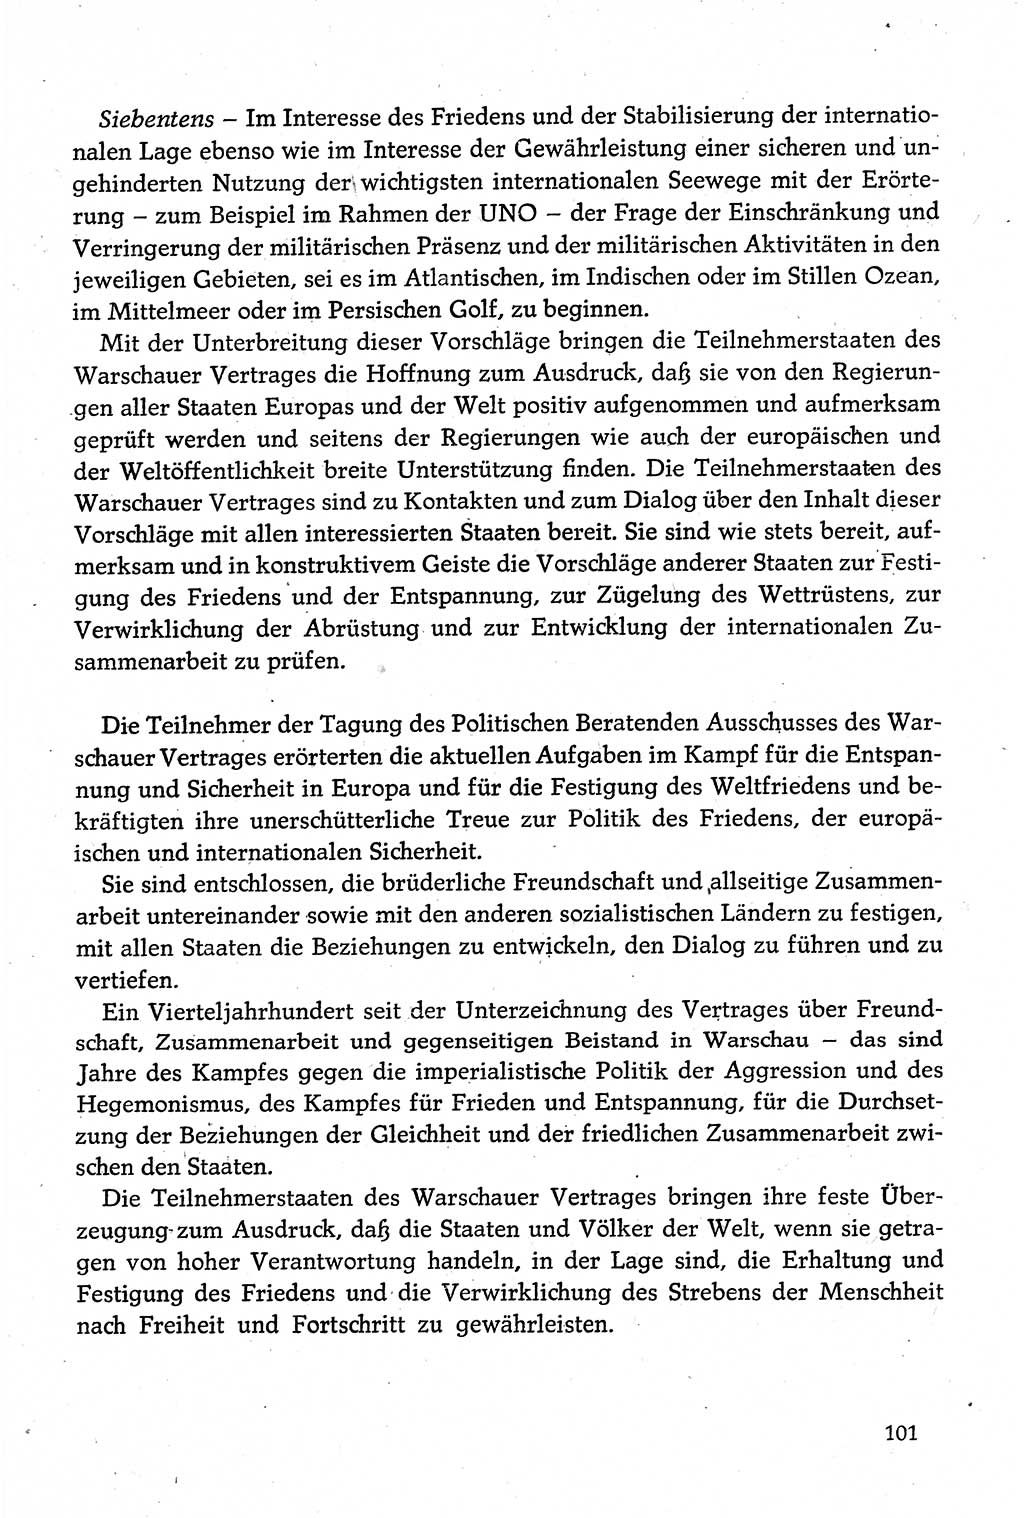 Dokumente der Sozialistischen Einheitspartei Deutschlands (SED) [Deutsche Demokratische Republik (DDR)] 1980-1981, Seite 101 (Dok. SED DDR 1980-1981, S. 101)